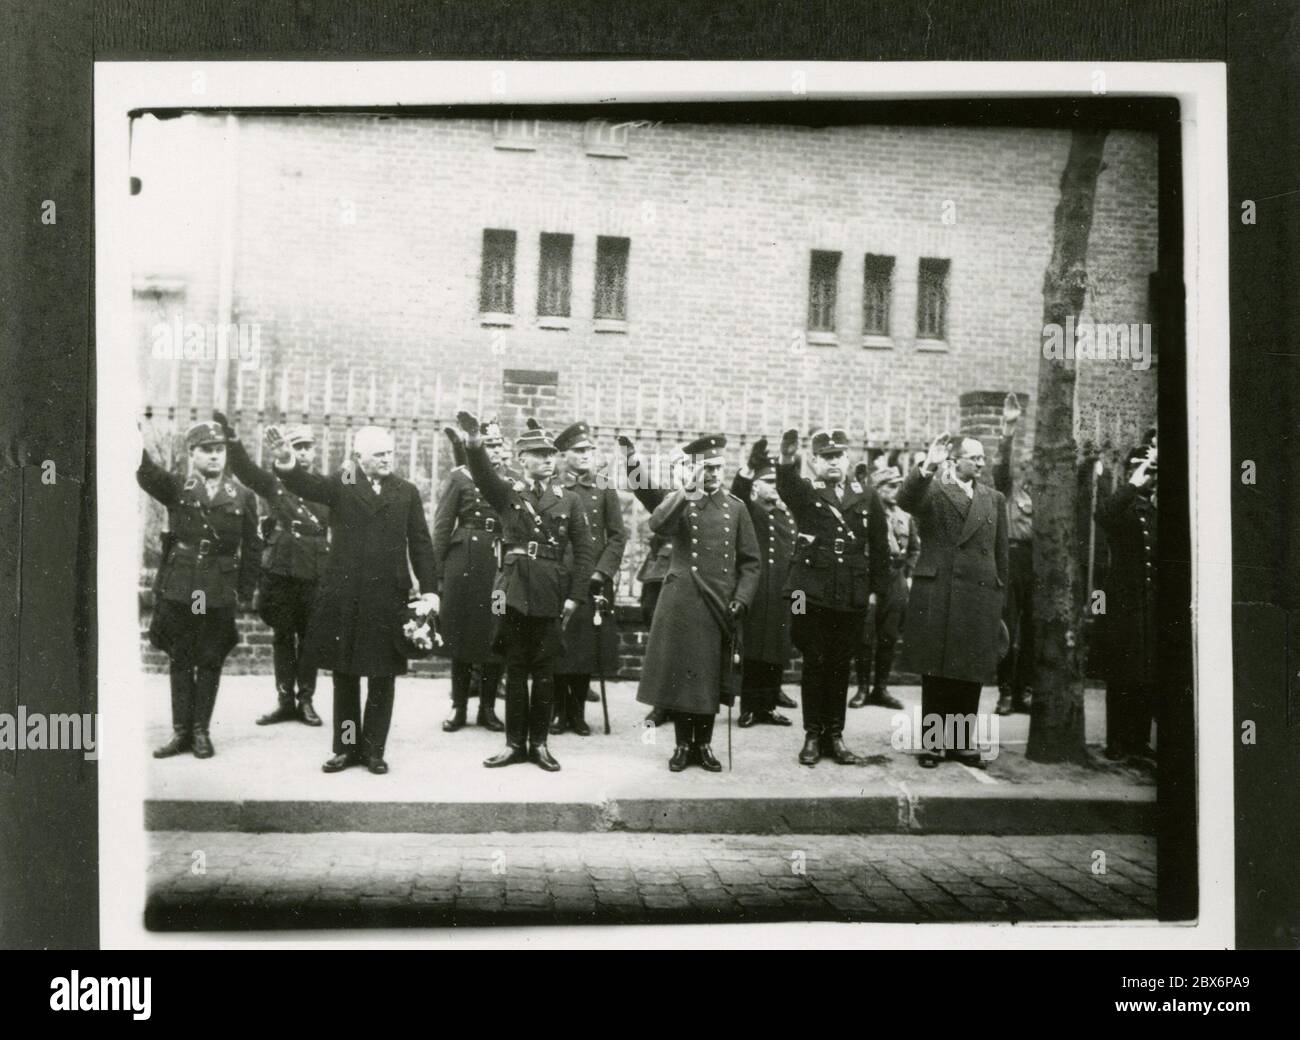 Le chef de groupe Ernst Heinrich Hoffmann photographie 1933 le photographe officiel d'Adolf Hitler, ainsi qu'un homme politique et éditeur nazi, qui était membre du cercle intime d'Hitler. Banque D'Images